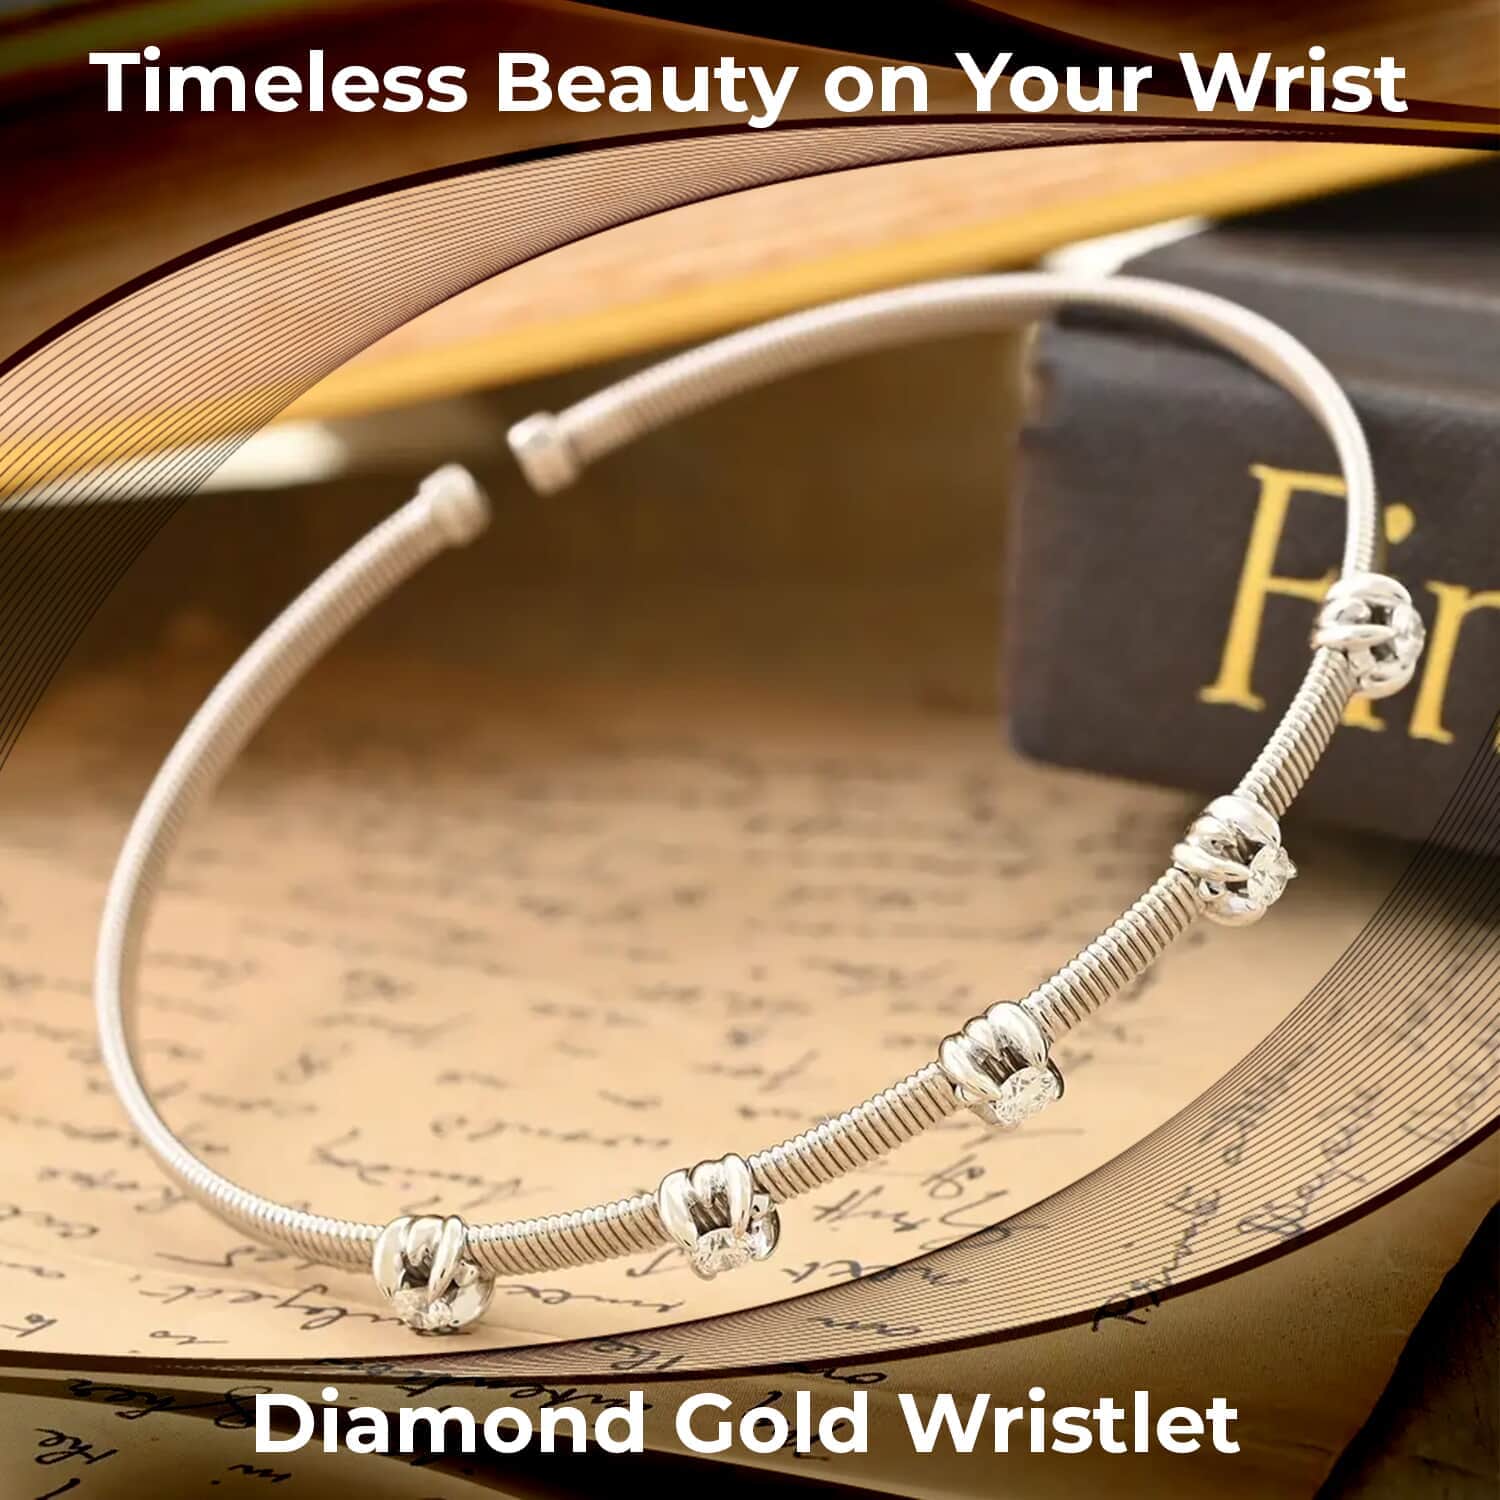 Buy Modani Diamond Wristlet, 14K White Gold Wristlet, G, VVS 